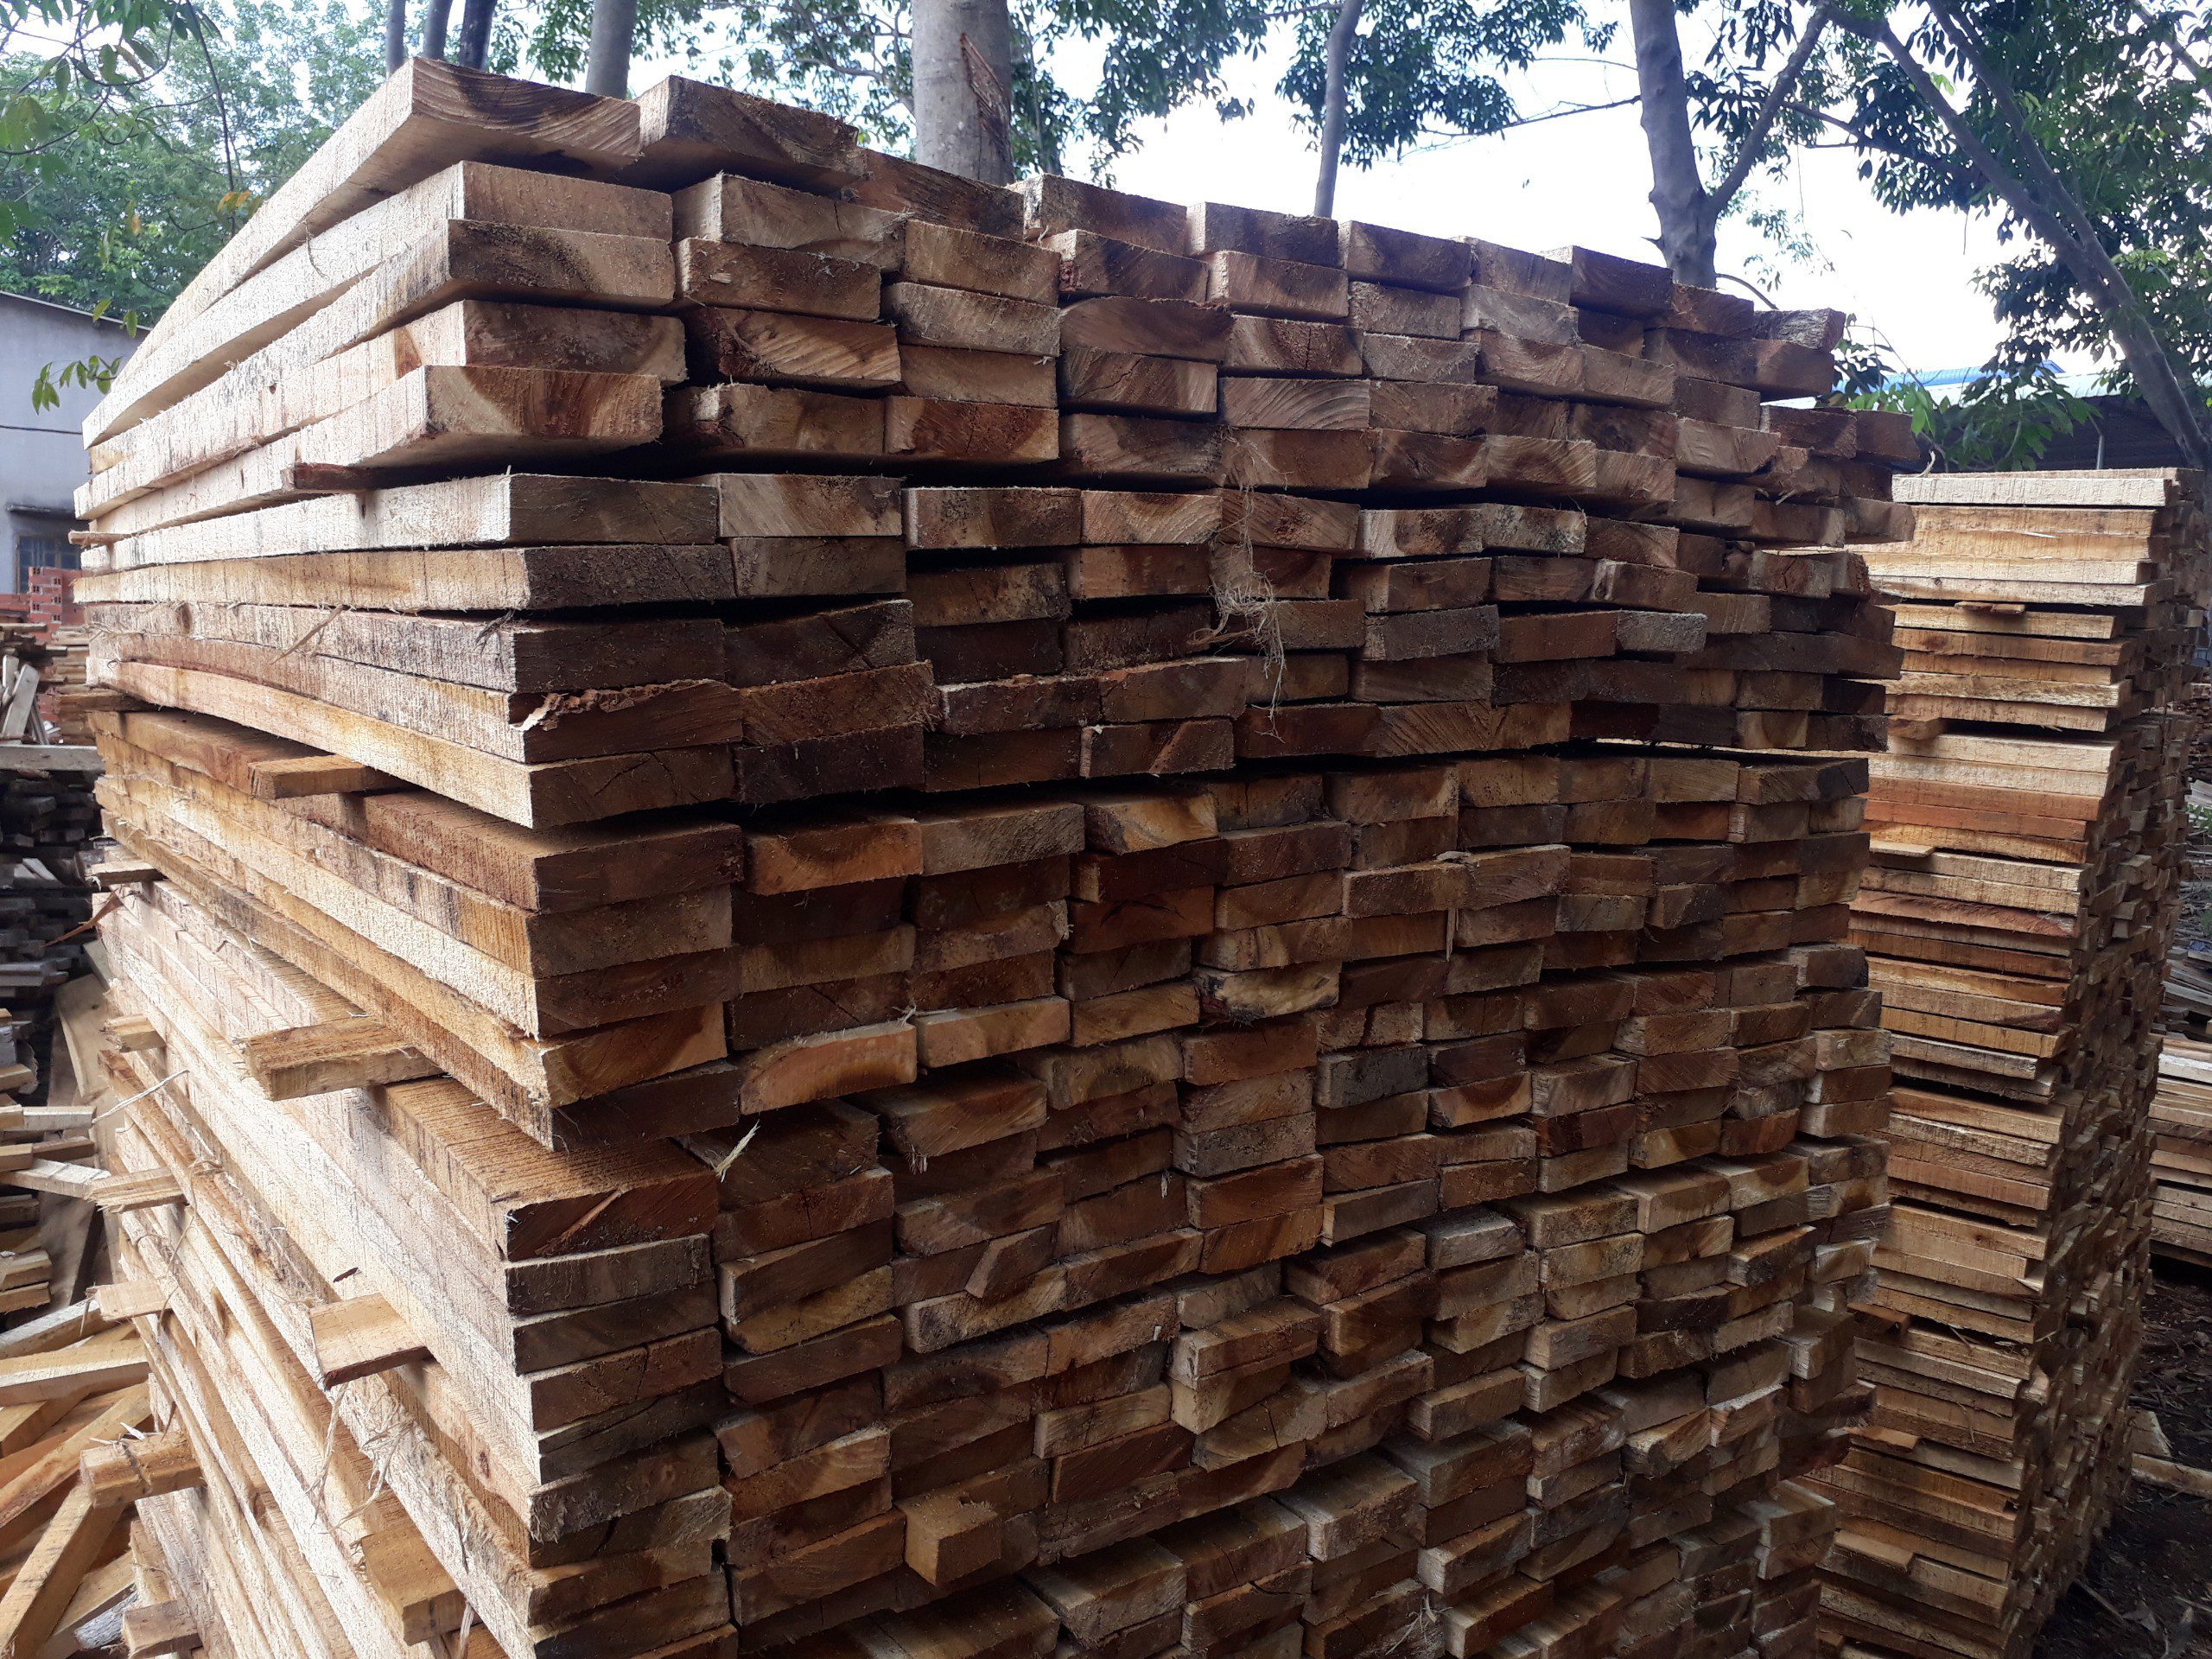 Đơn hàng xuất khẩu gỗ keo xẻ sang thị trường Sri Lanka GK01-040621